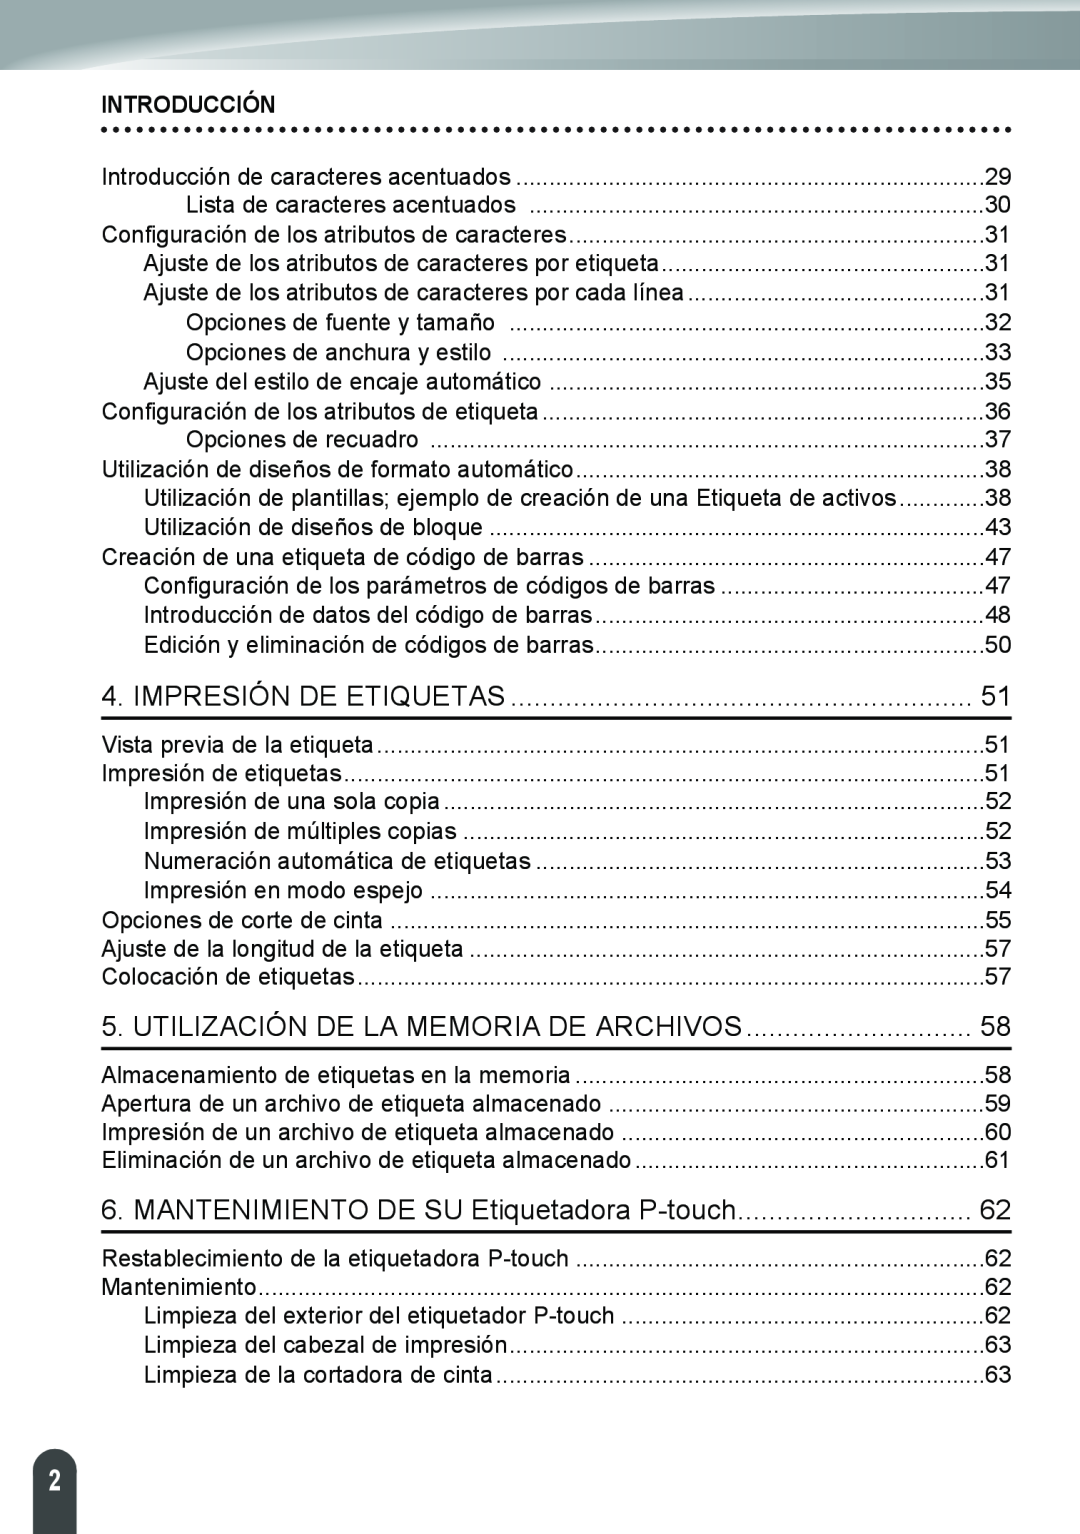 Brother PT-2110 Impresión De Etiquetas, Utilización De La Memoria De Archivos, MANTENIMIENTO DE SU Etiquetadora P-touch 